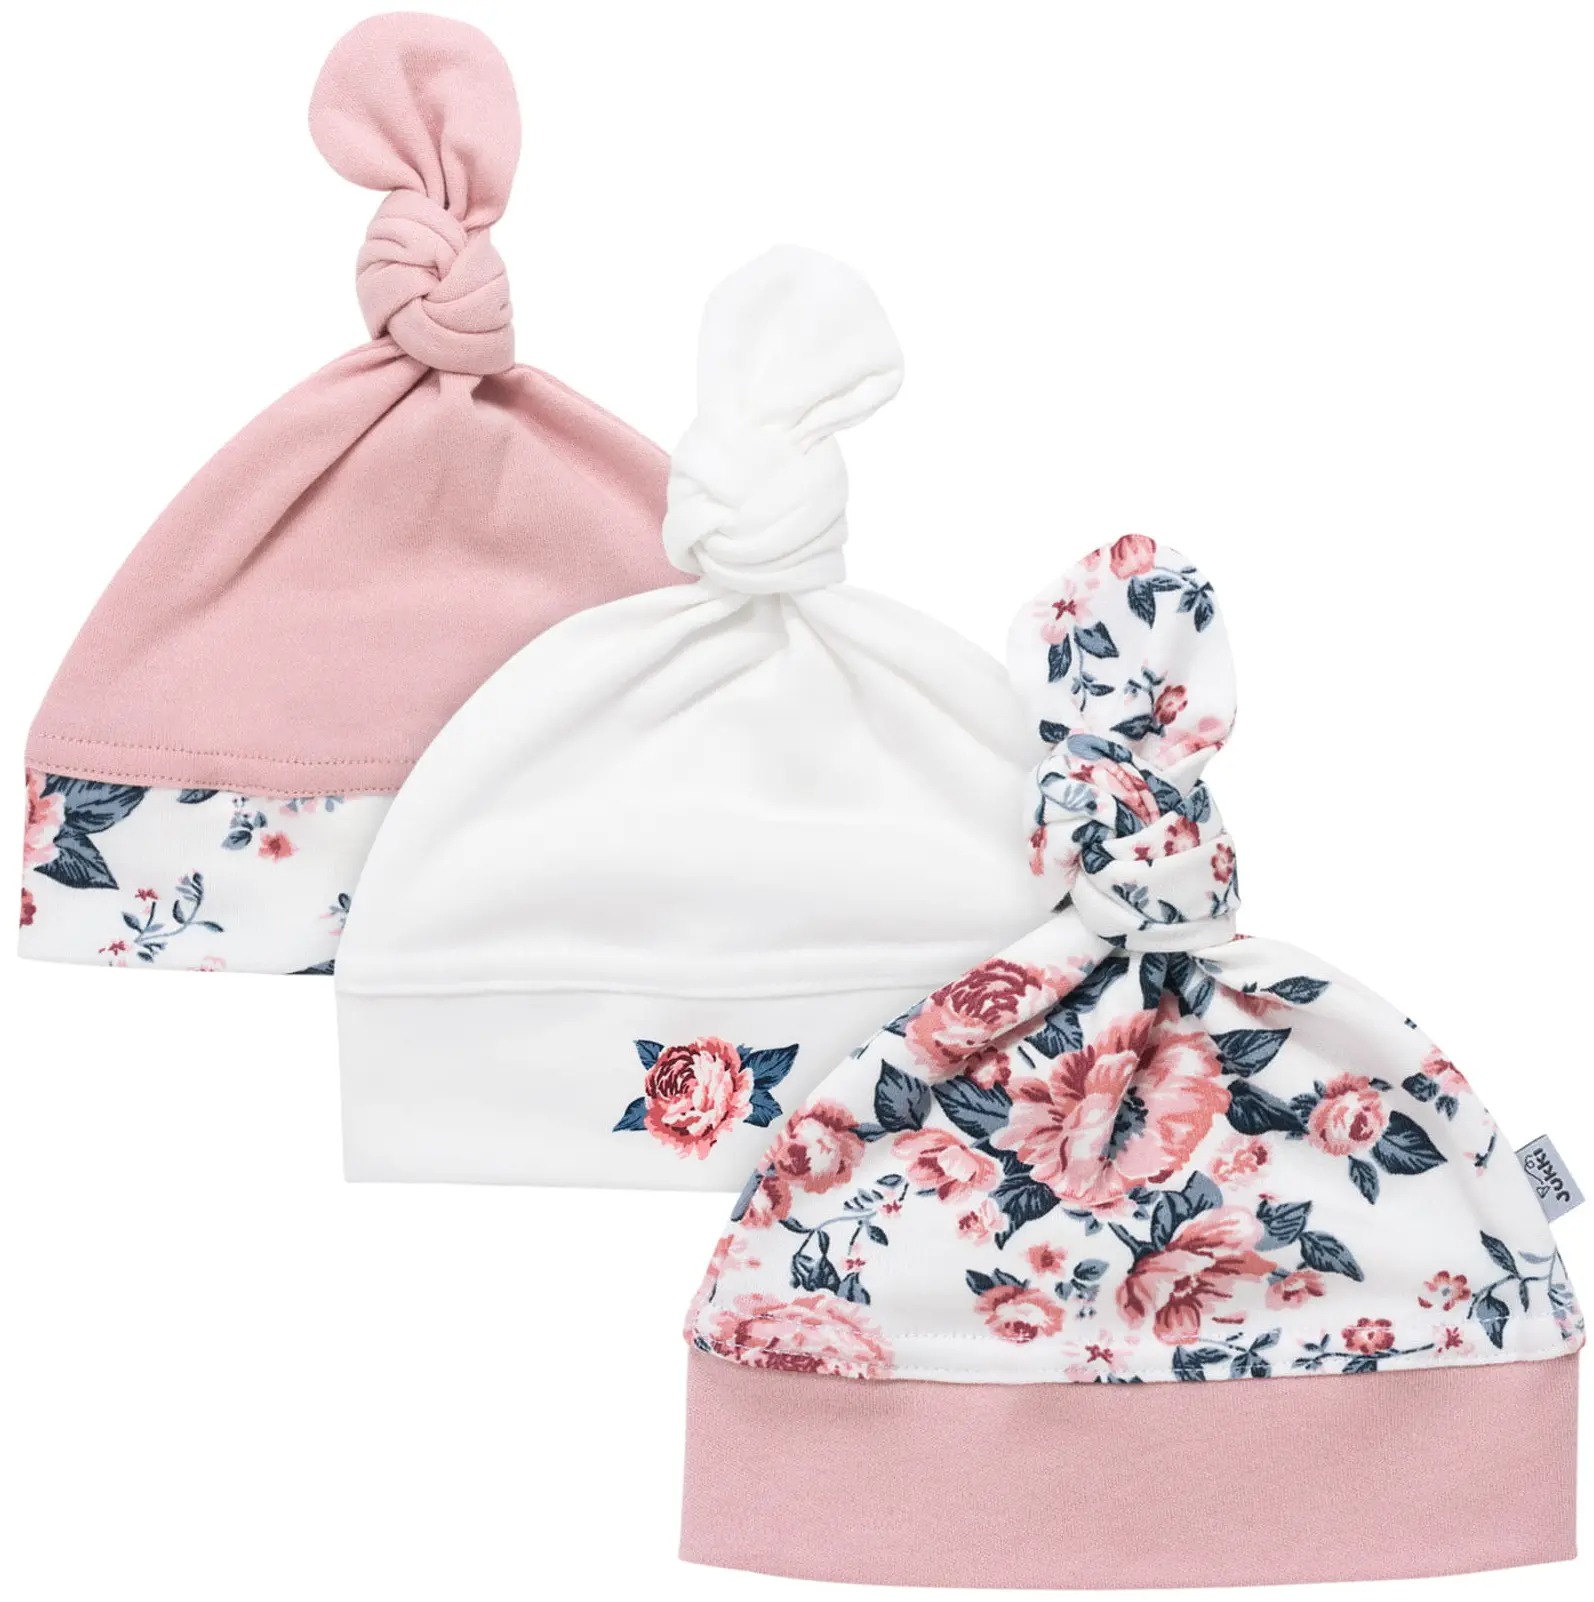 Bonnet pour bébé : accessoire de mode ou nécessité ?